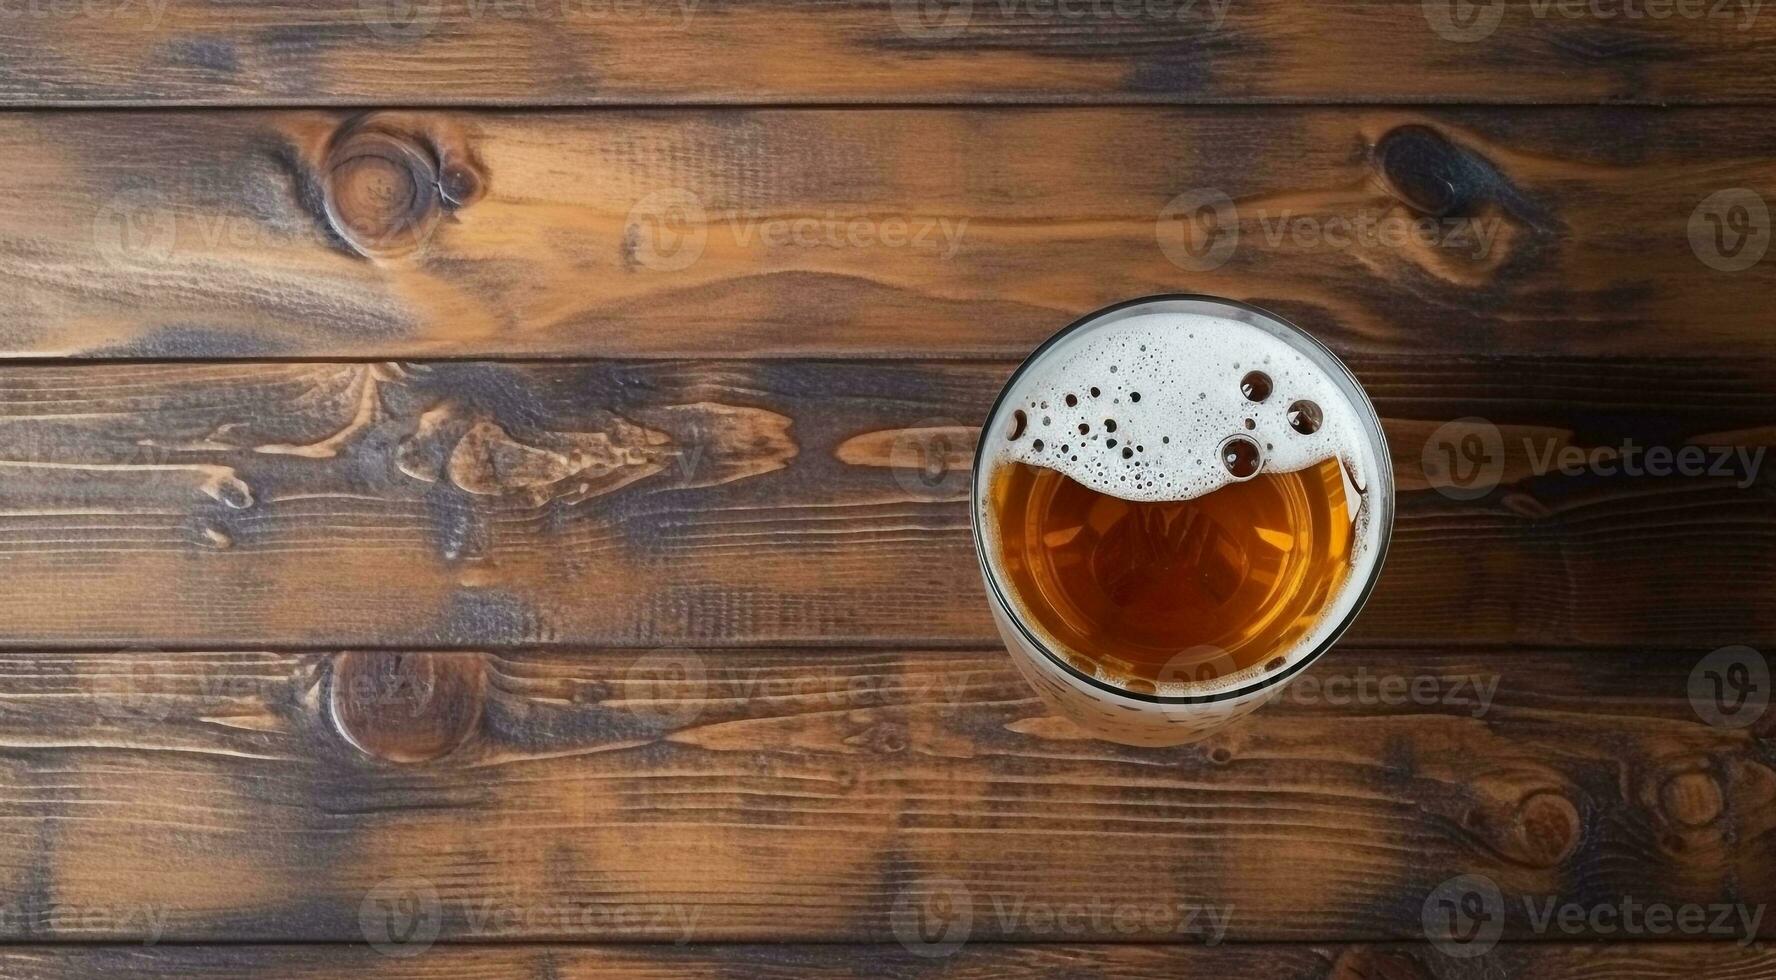 ai genererad glas av öl på abstrakt bakgrund, öl tapet, glas av öl i de mörk, öl med skum, alkoholhaltig dryck på mörk bakgrund foto